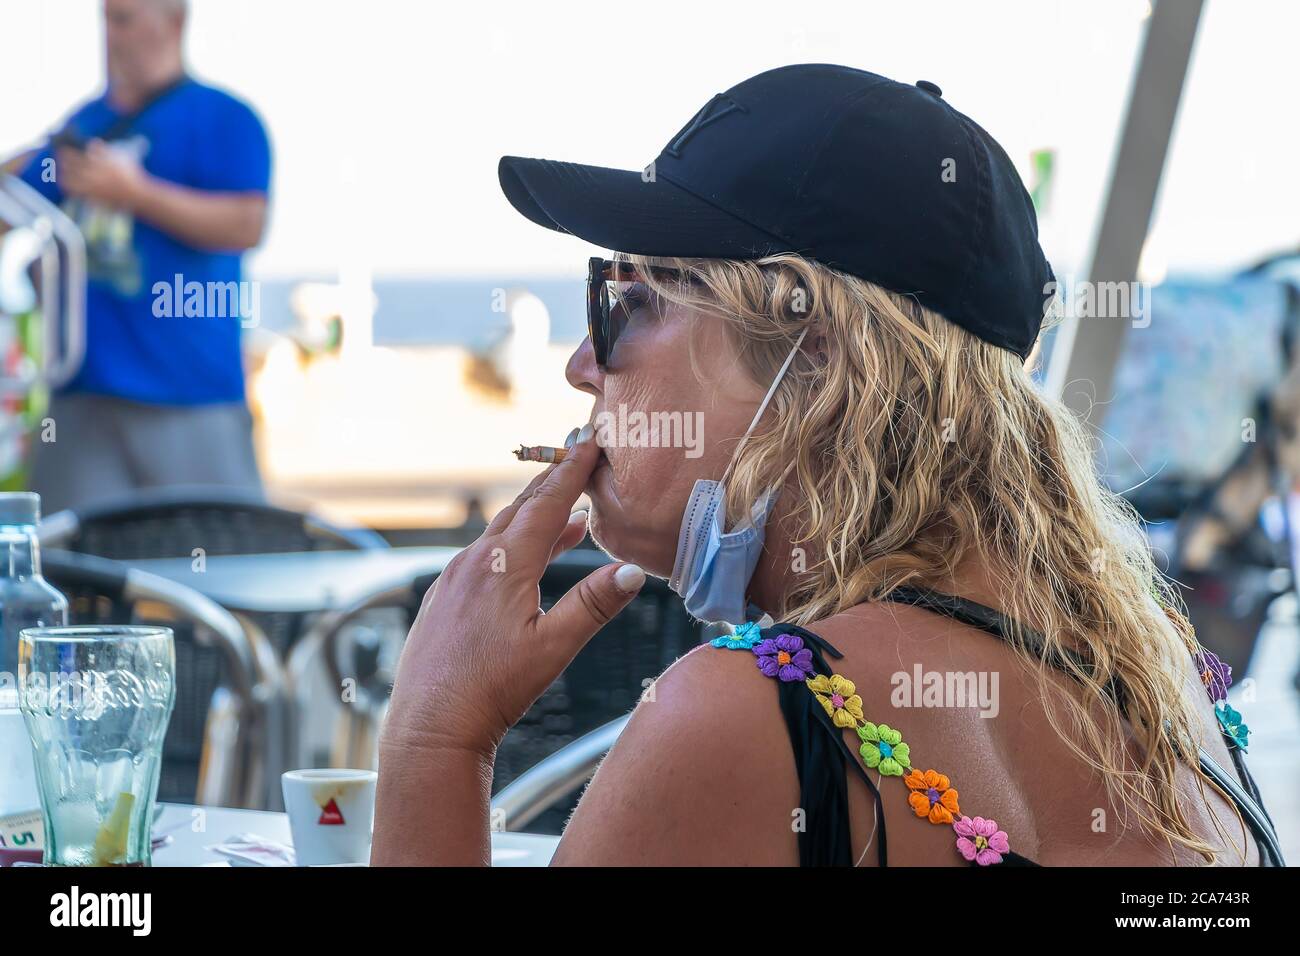 Huelva, Espagne - 10 juillet 2020: Une femme blonde mature portant un masque pour éviter le coronavirus Covid-19 fume une cigarette sur une terrasse de bar Banque D'Images